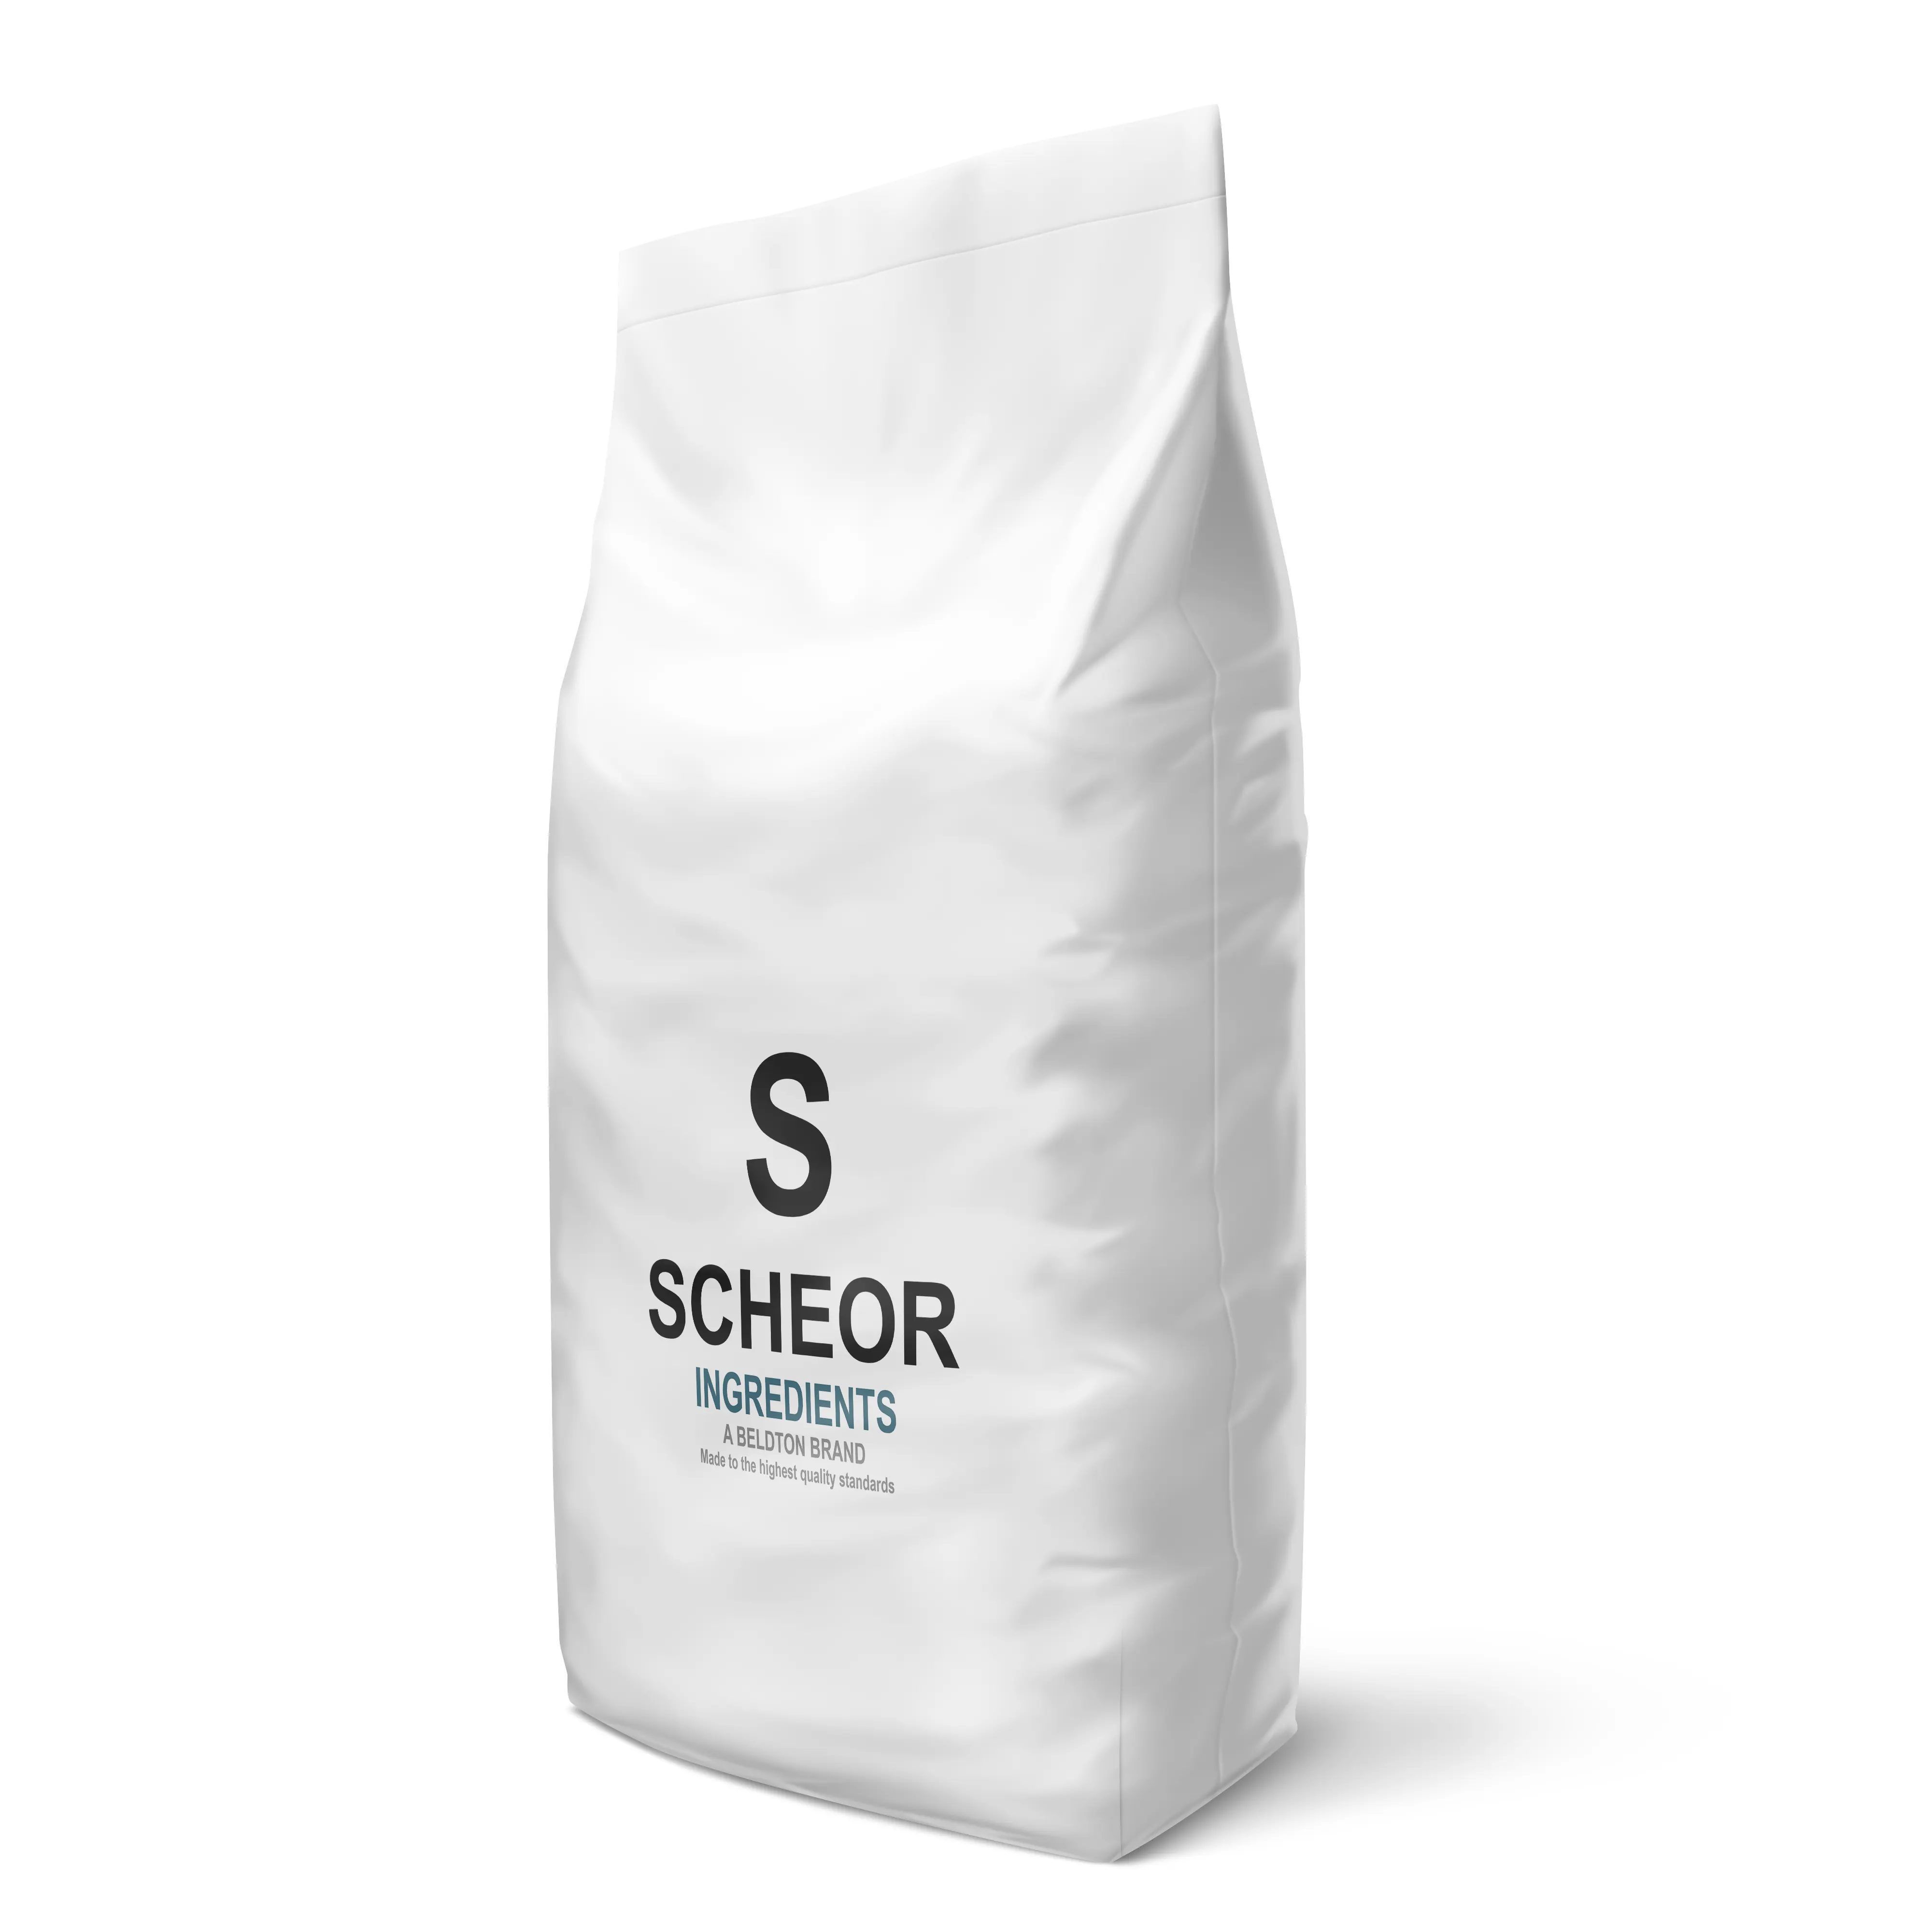 Scheor карамельный цвет 10 25 кг большой пакет ингредиенты OEM OBM частная марка